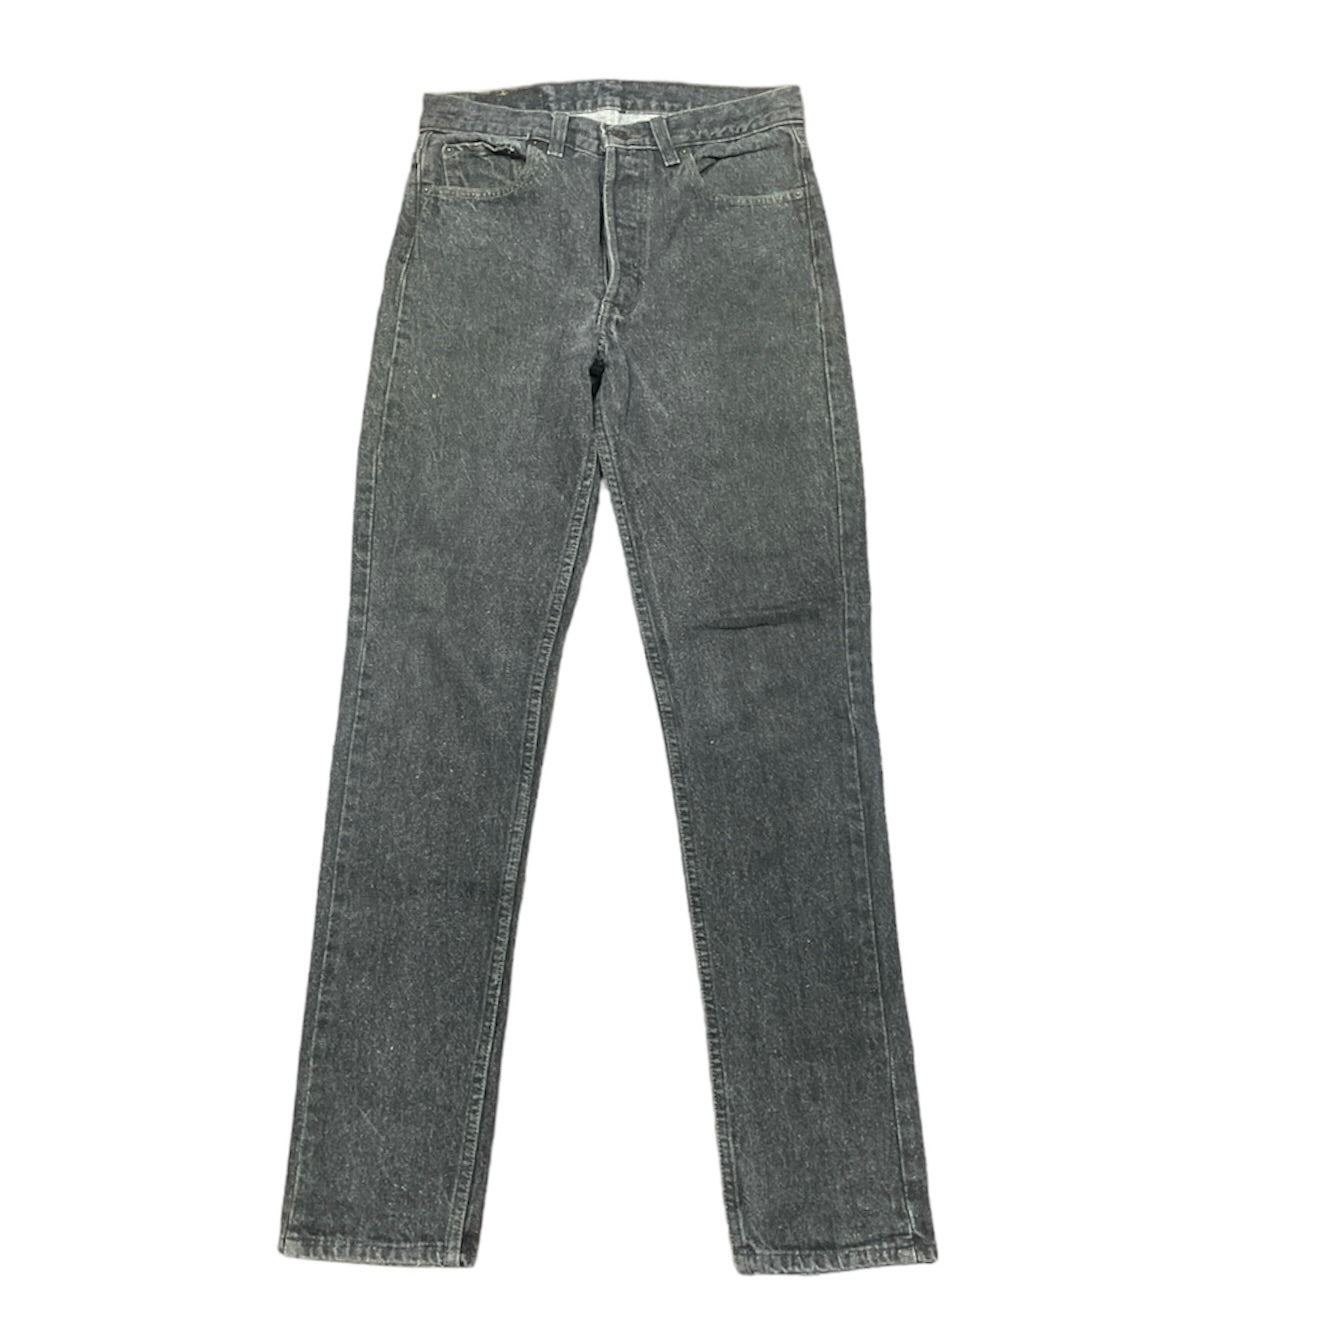 Vintage Levis 501 Black/Grey Jeans (W29/L32)